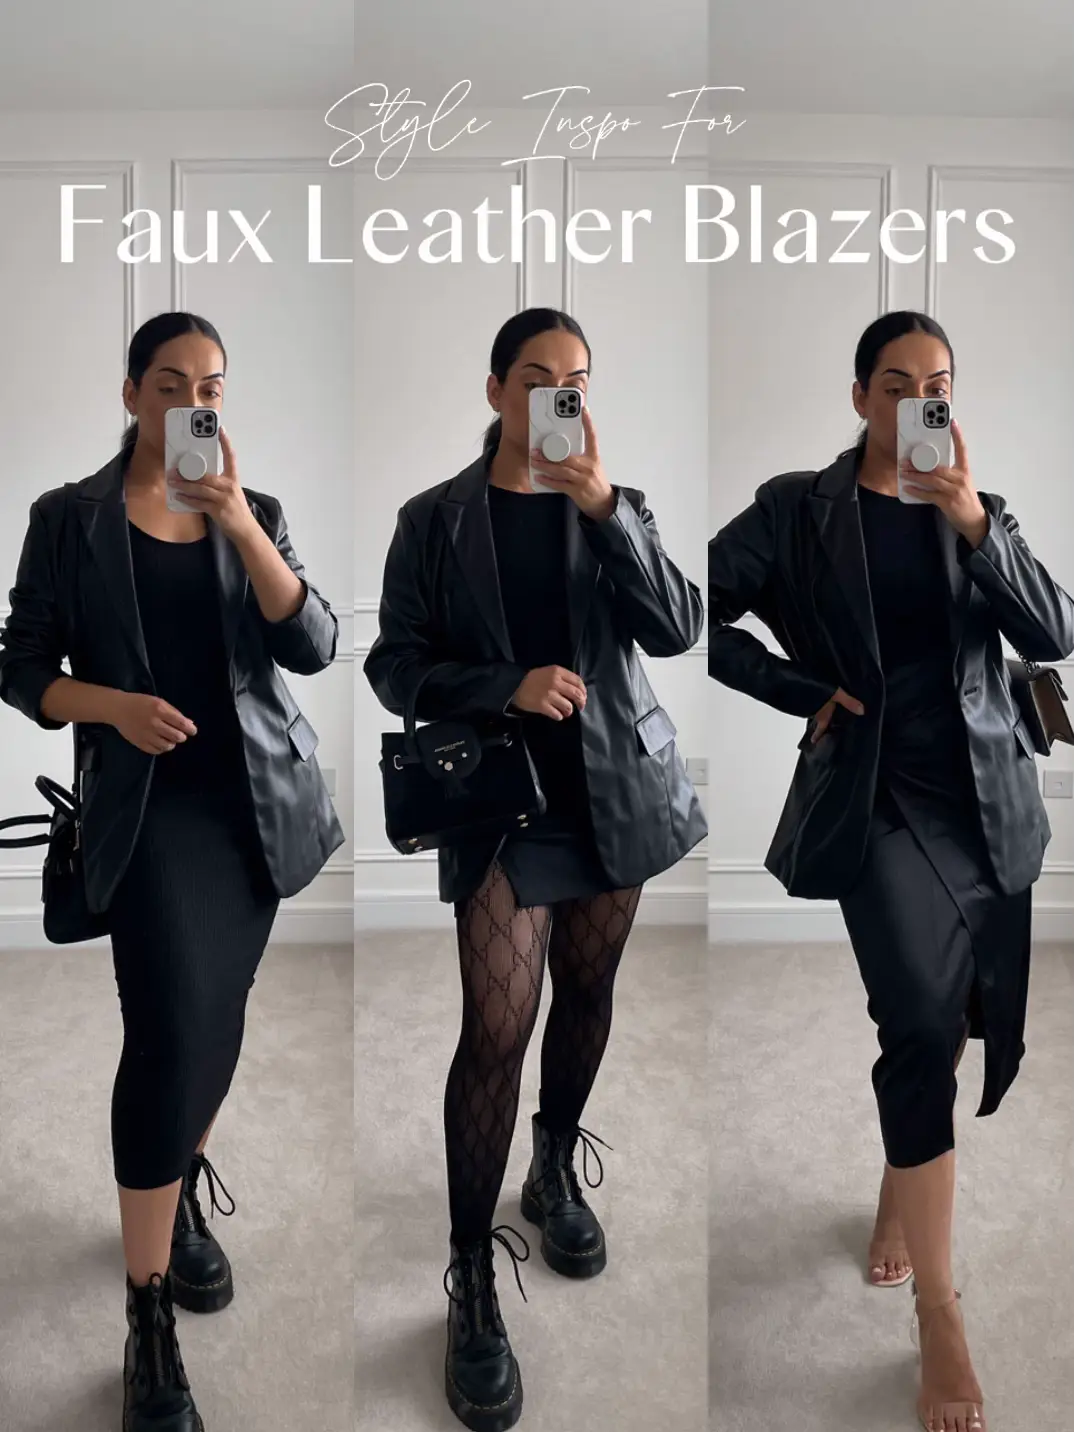 Faux leather blazer outfits - Lemon8 Search